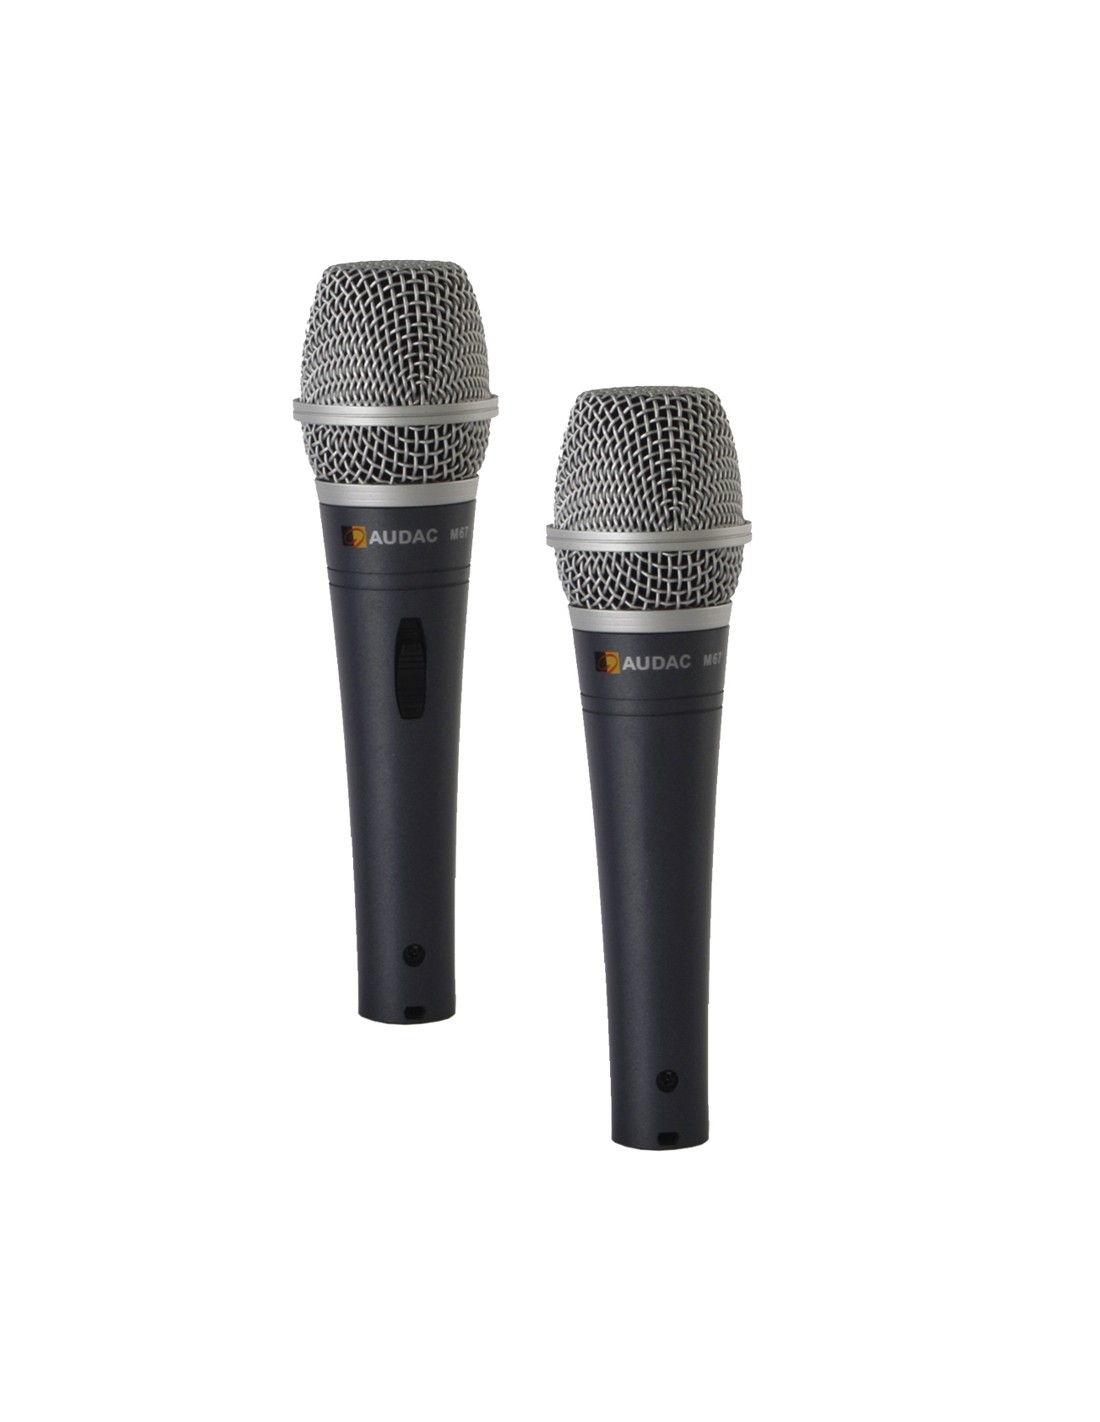 Купить вокальный. Микрофон Audac m67. Ручные микрофоны Audac m67. Вокальный микрофон Беринджер. Numan микрофон вокальный.